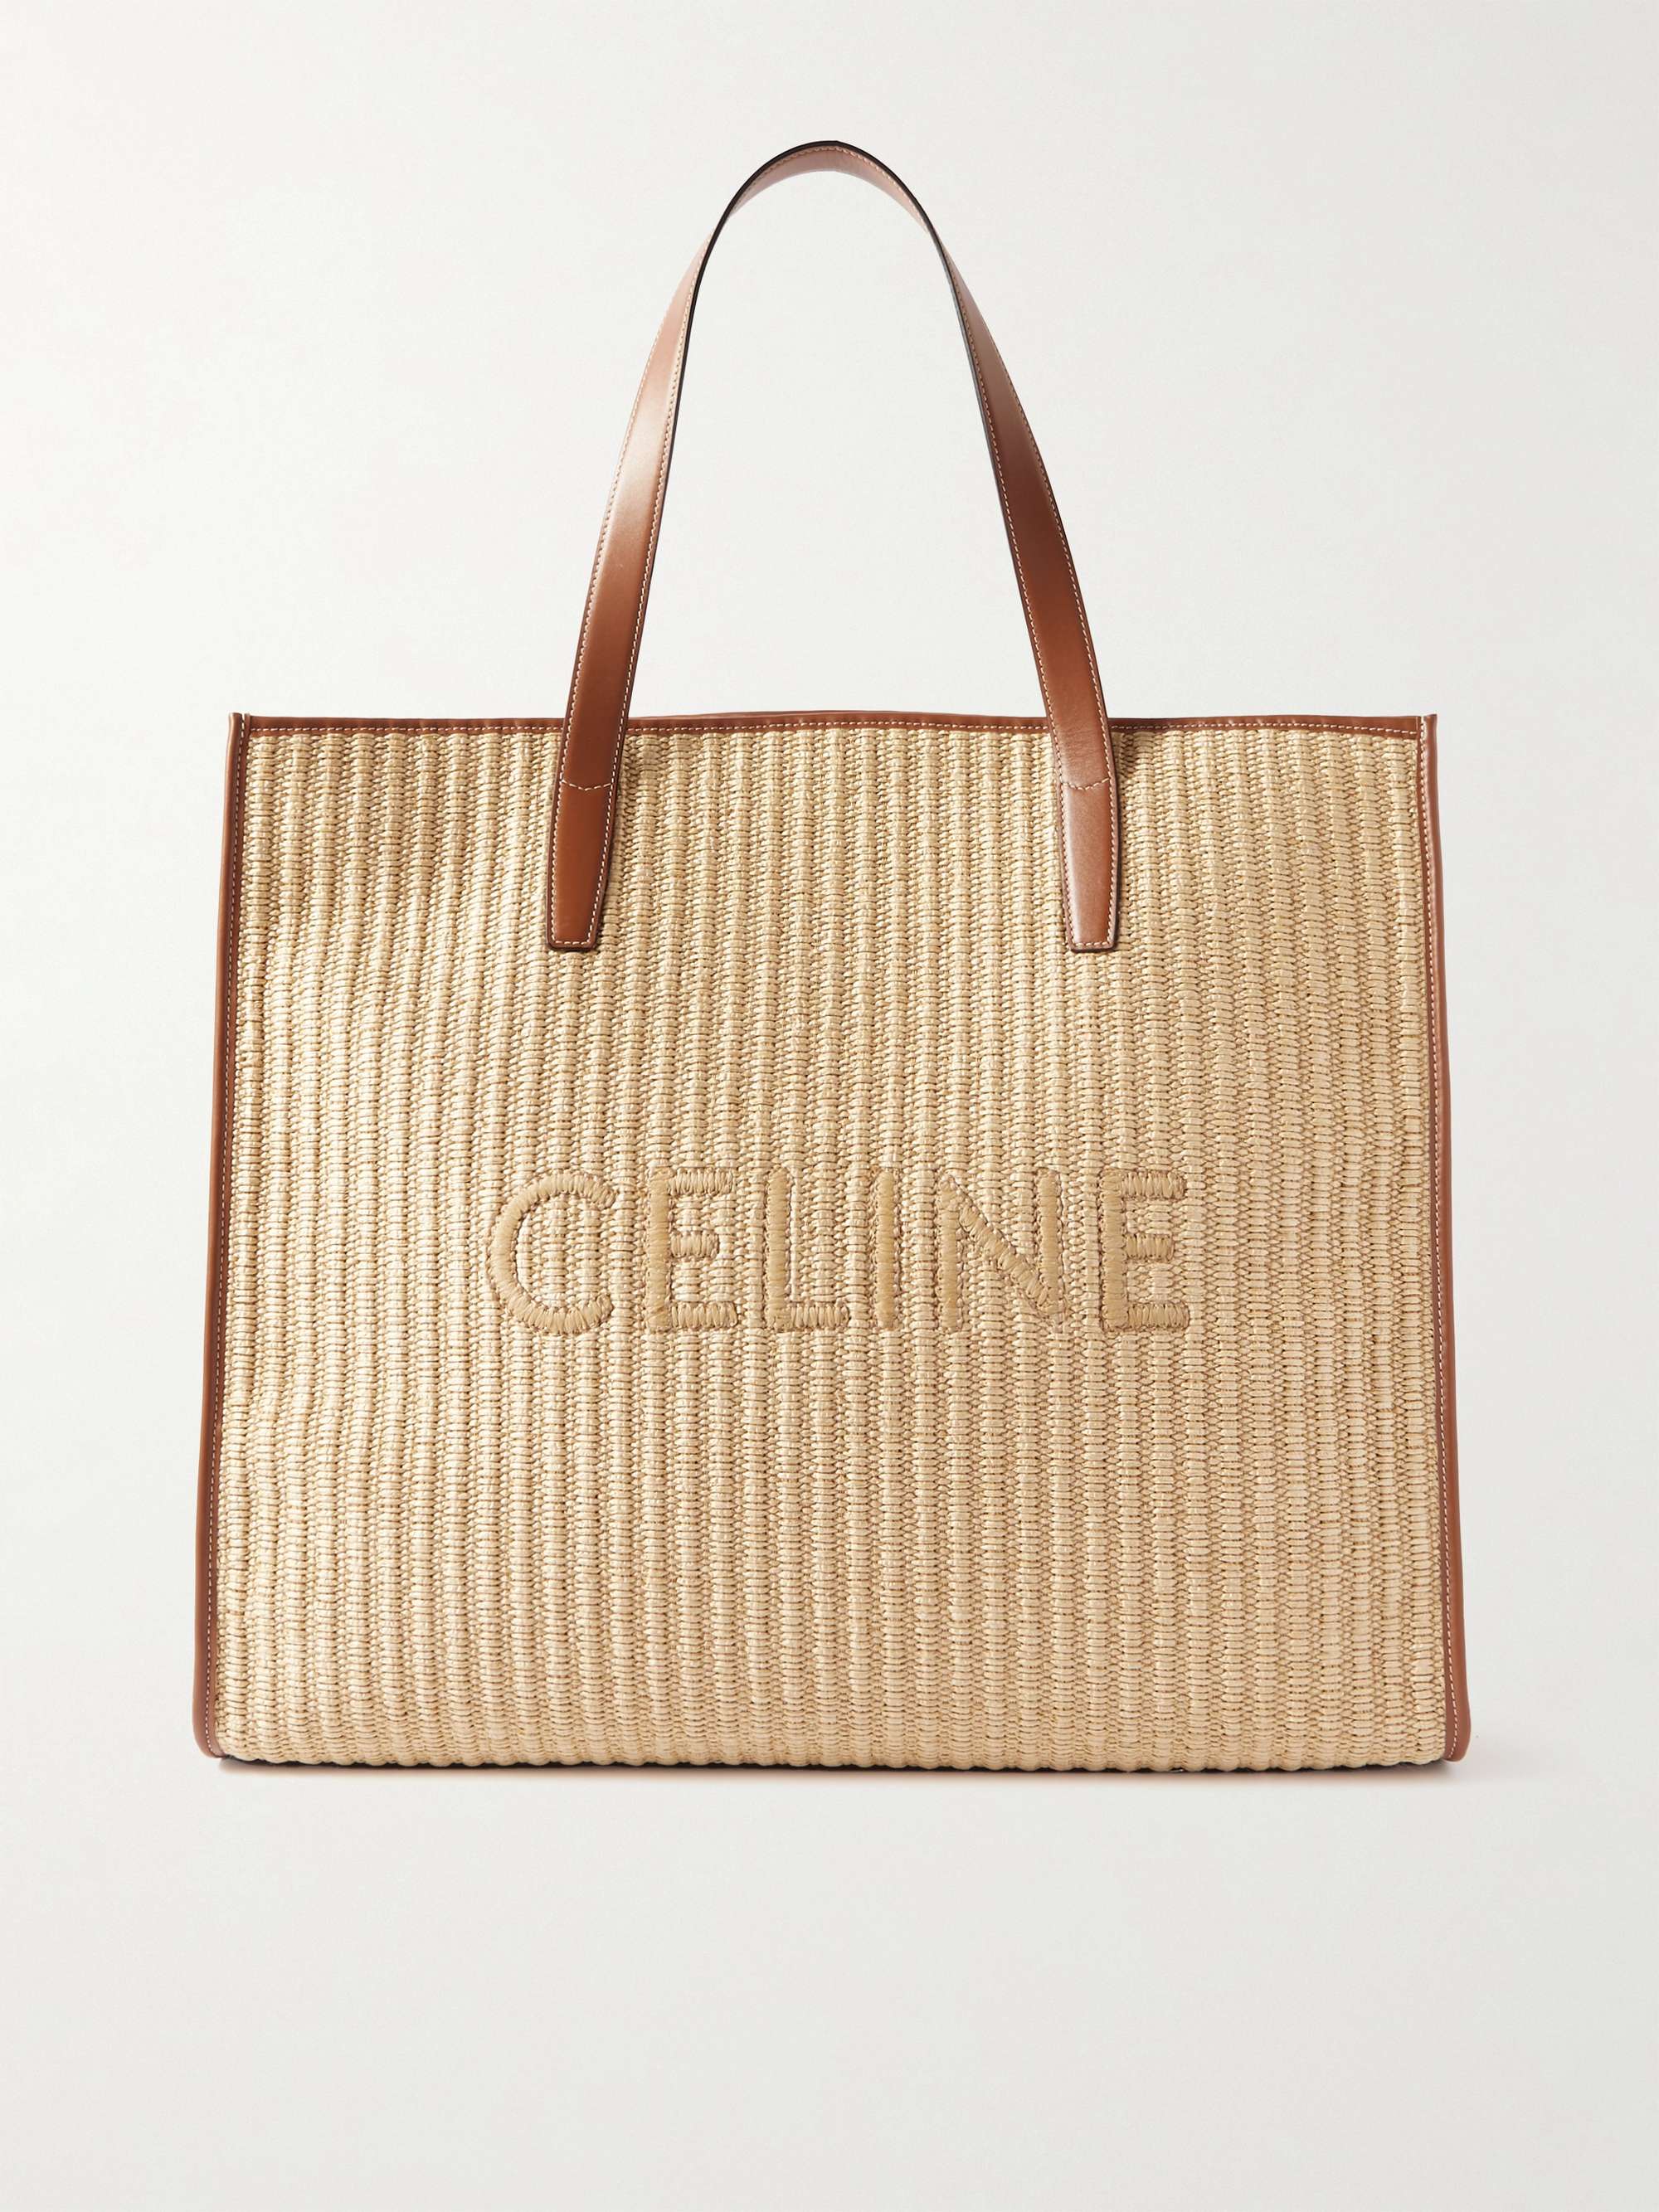 Celine Homme Men's Logo-Embroidered Raffia Tote Bag